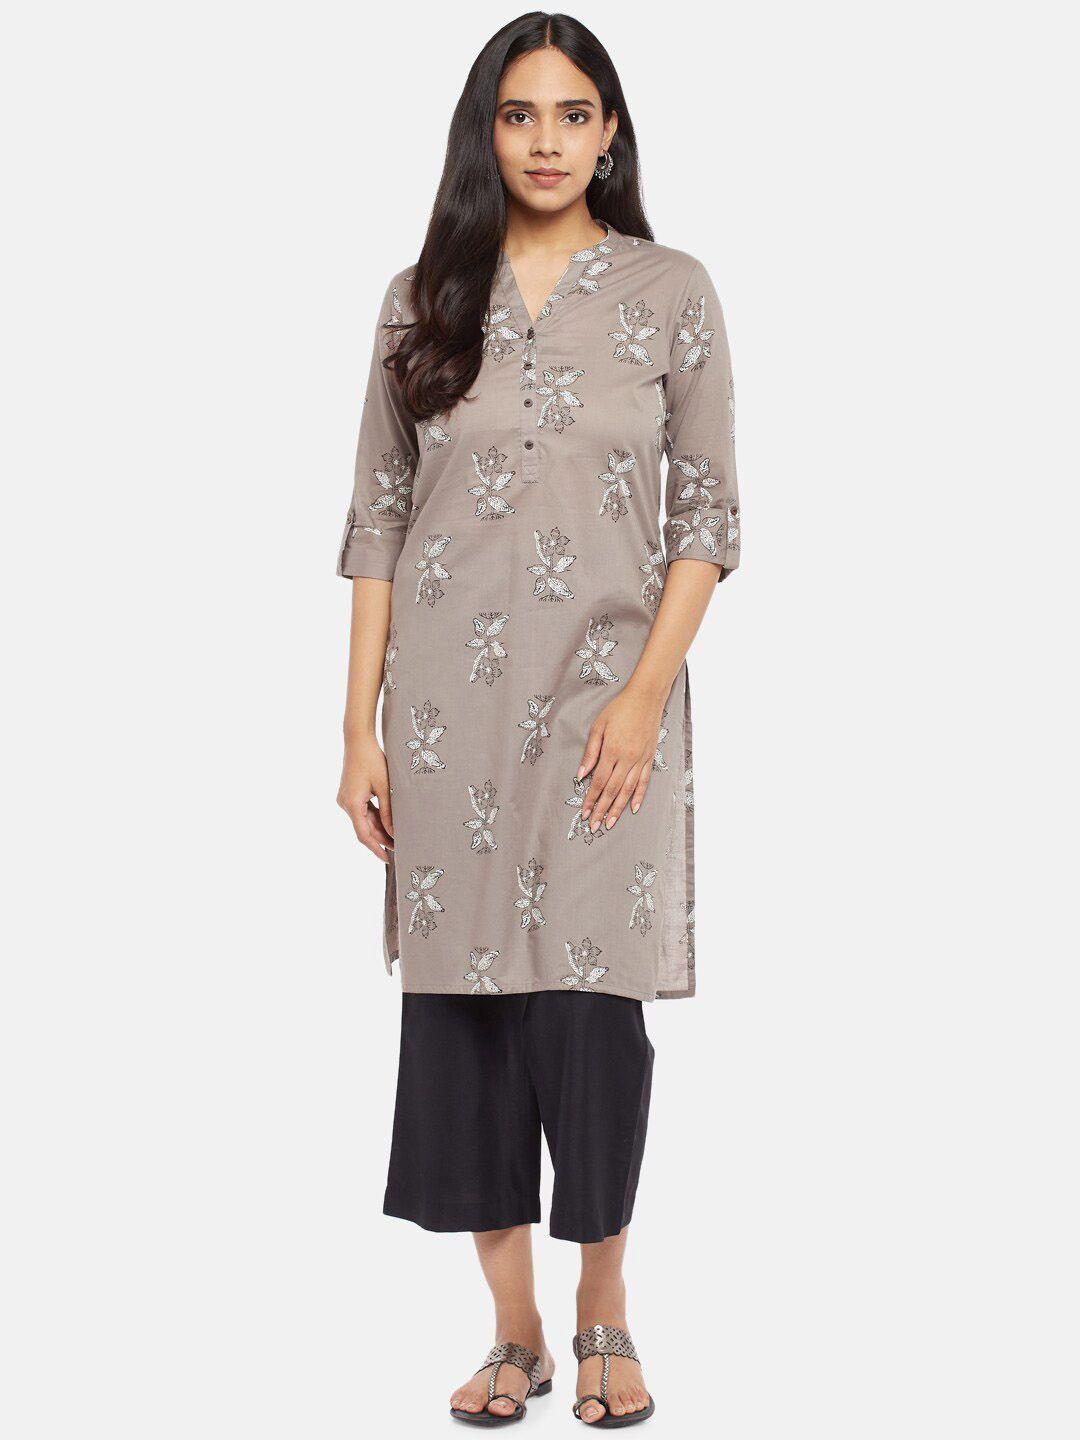 rangmanch by pantaloons woman grey floral printed kurta